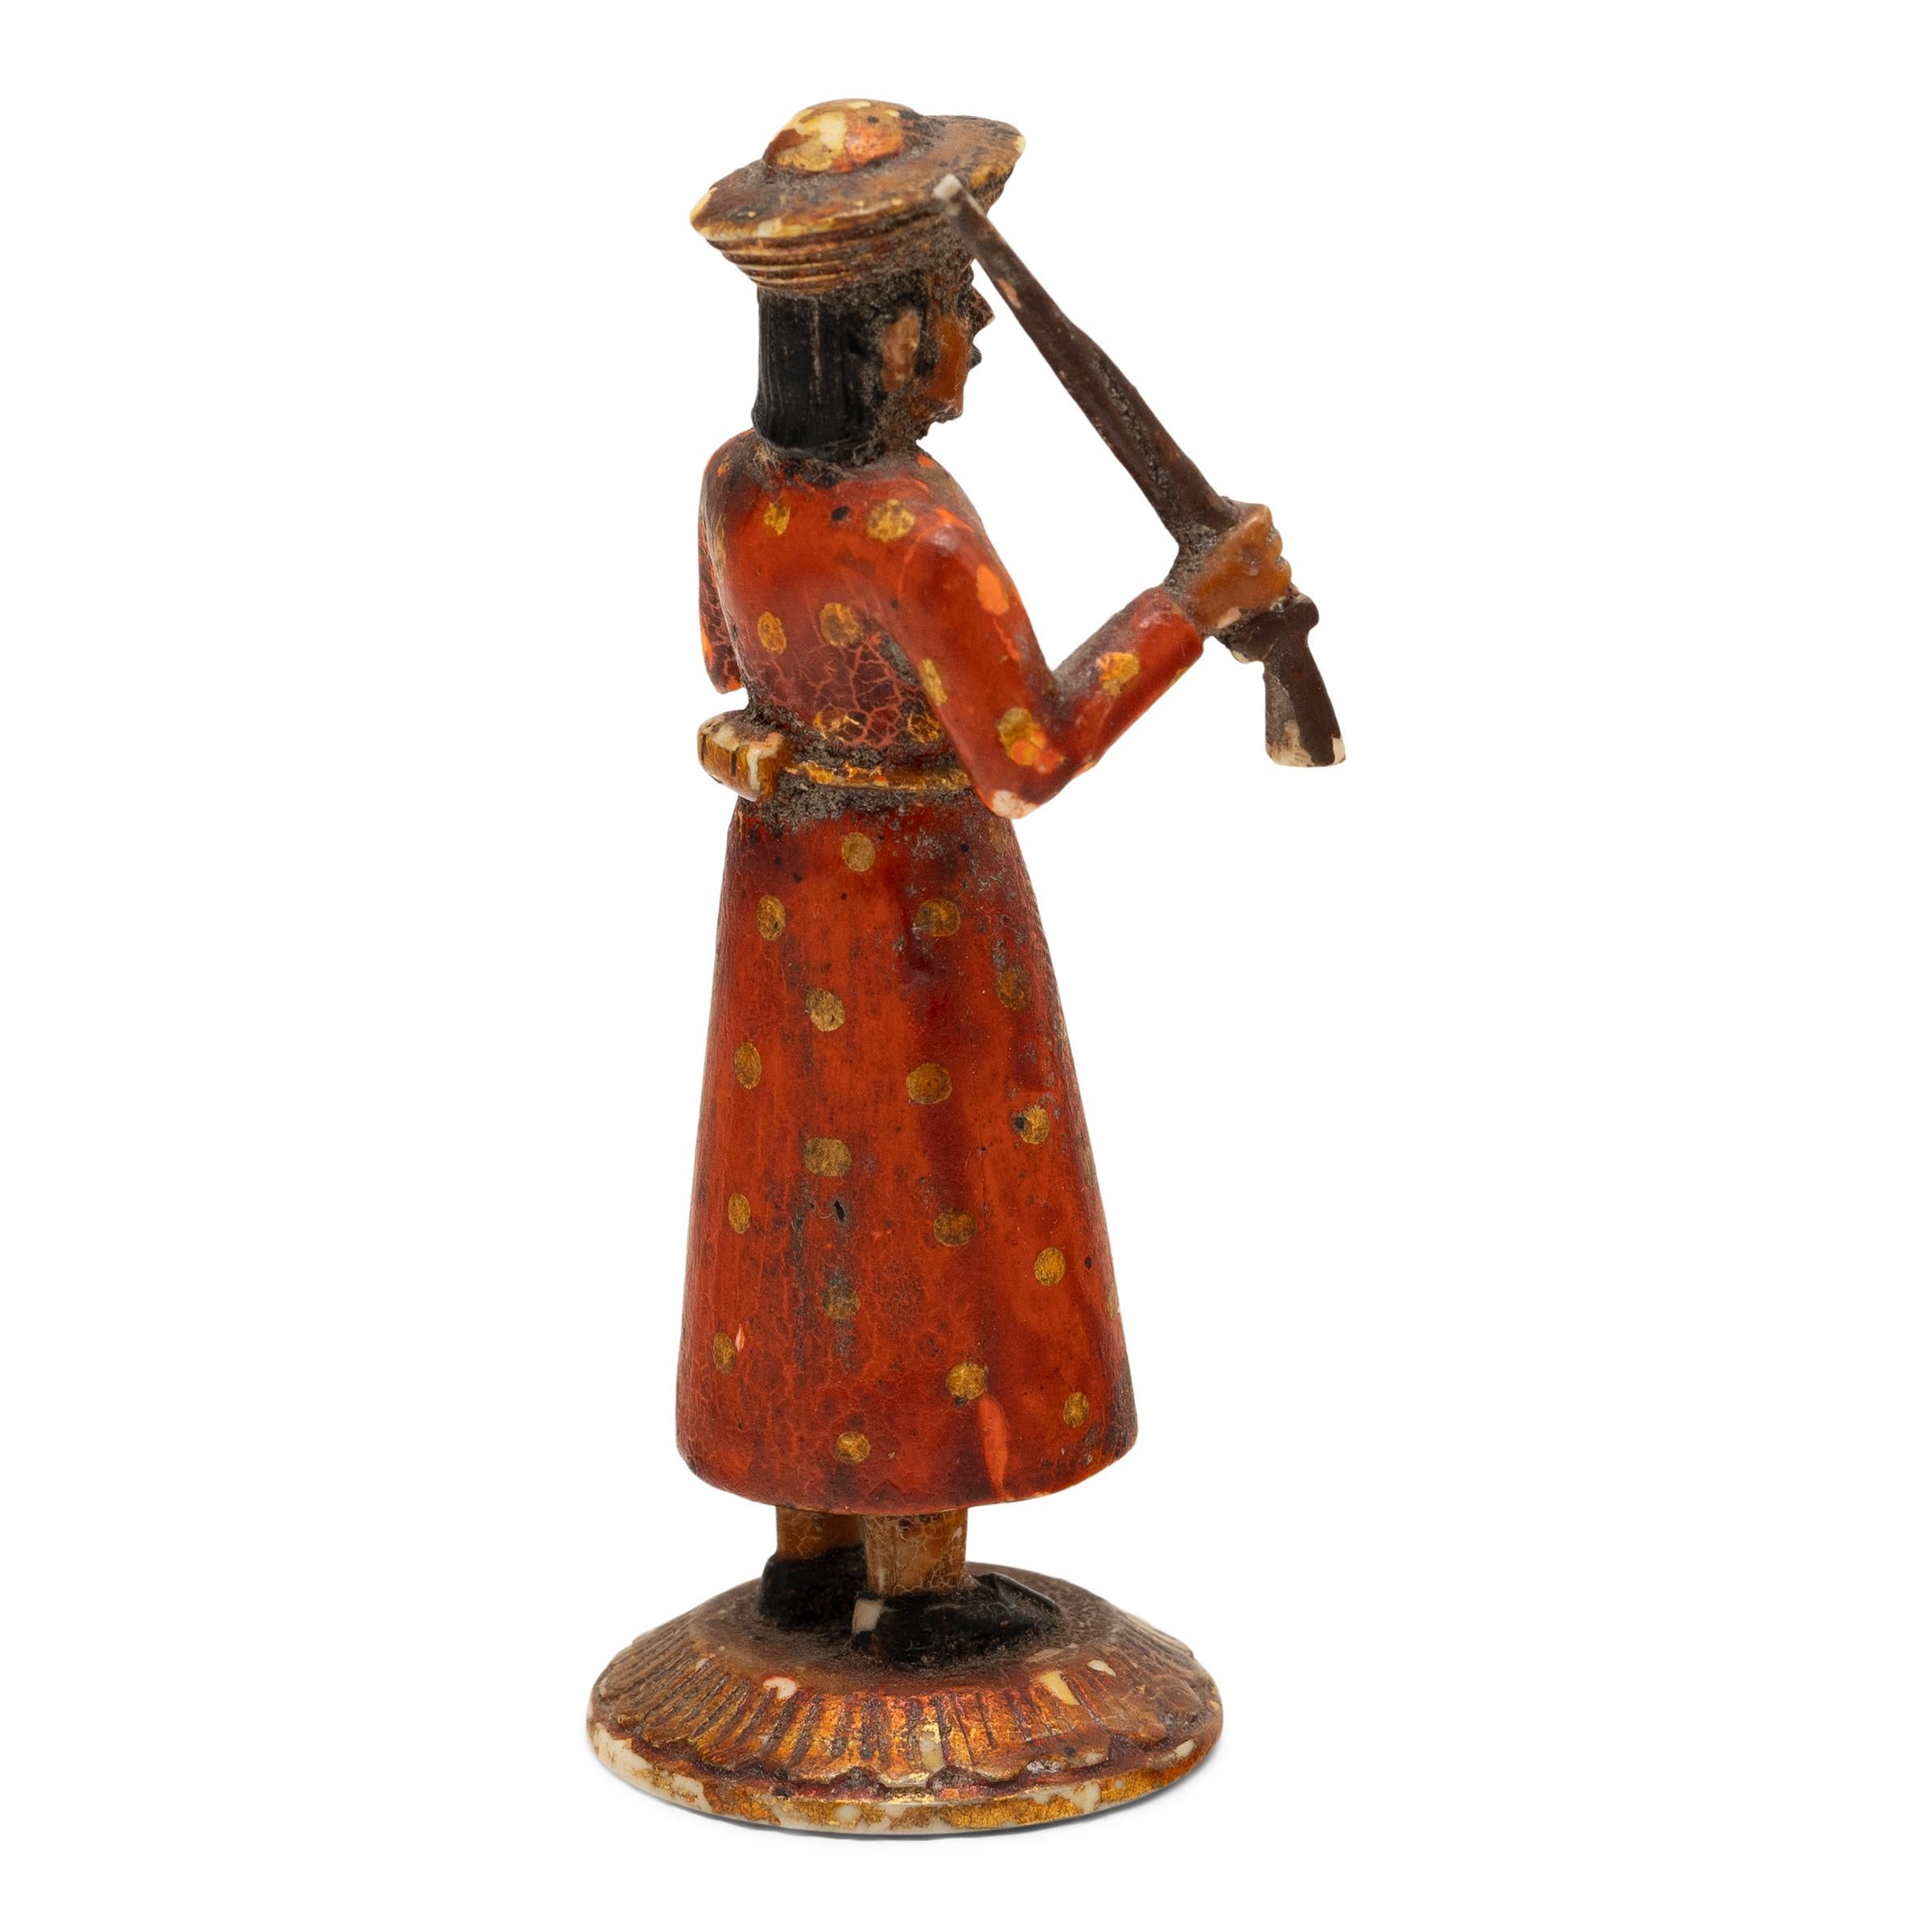 Cette figurine du début du XXe siècle est sculptée à la main dans de l'os et représente un soldat indien tenant un fusil à mousquet. Inspirée des cavaliers Sowar qui servaient sous la Compagnie britannique des Indes orientales, la petite figurine